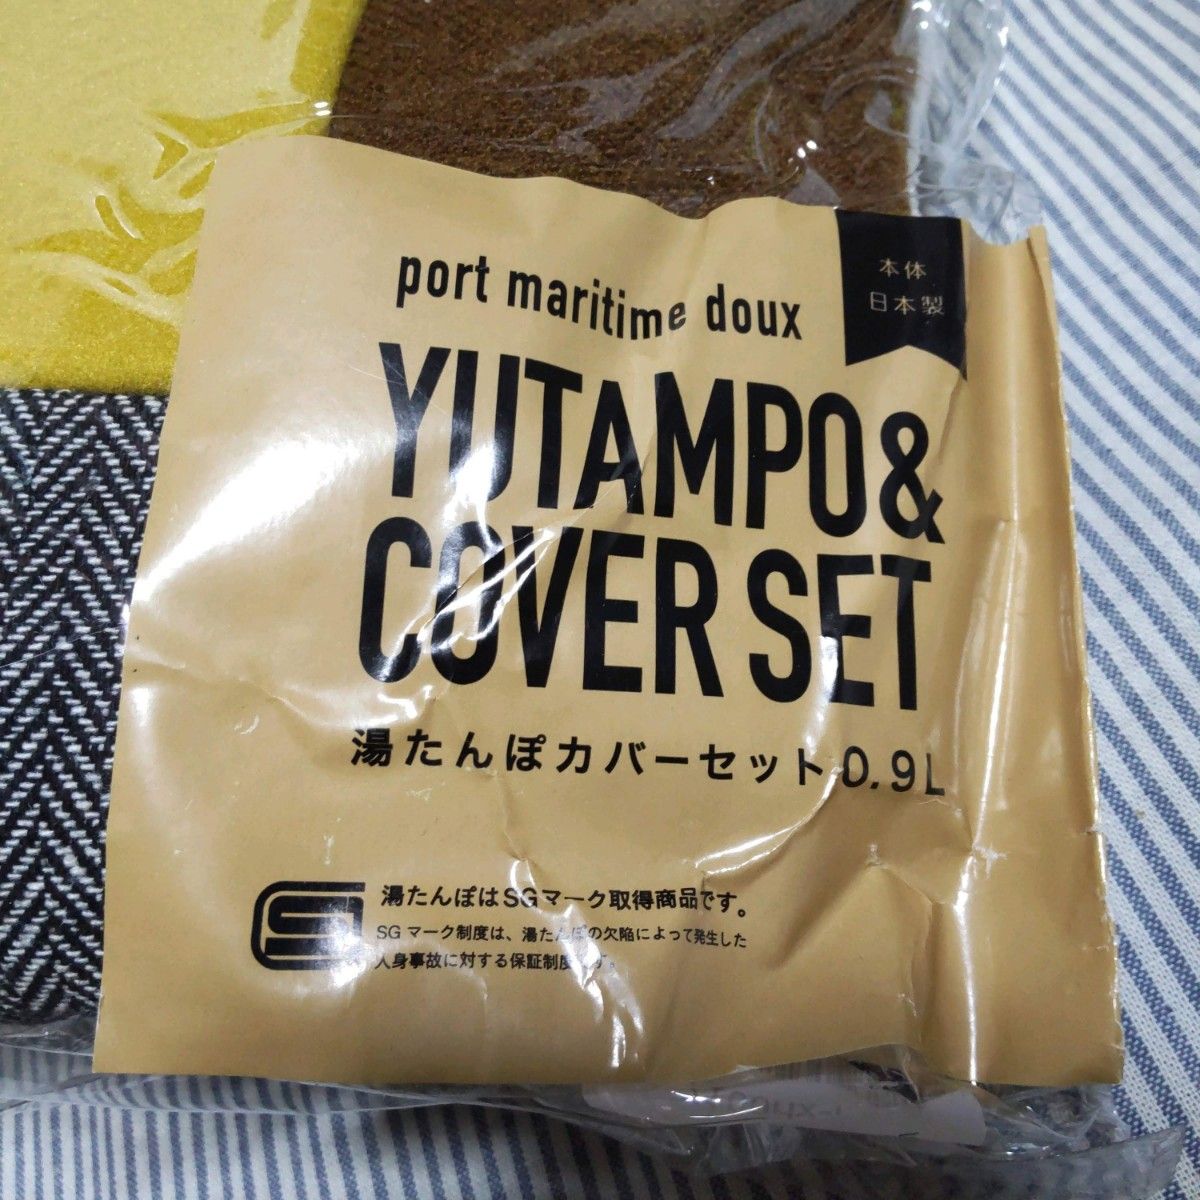 湯たんぽ 0.9L カバーセット SGマーク取得商品 日本製